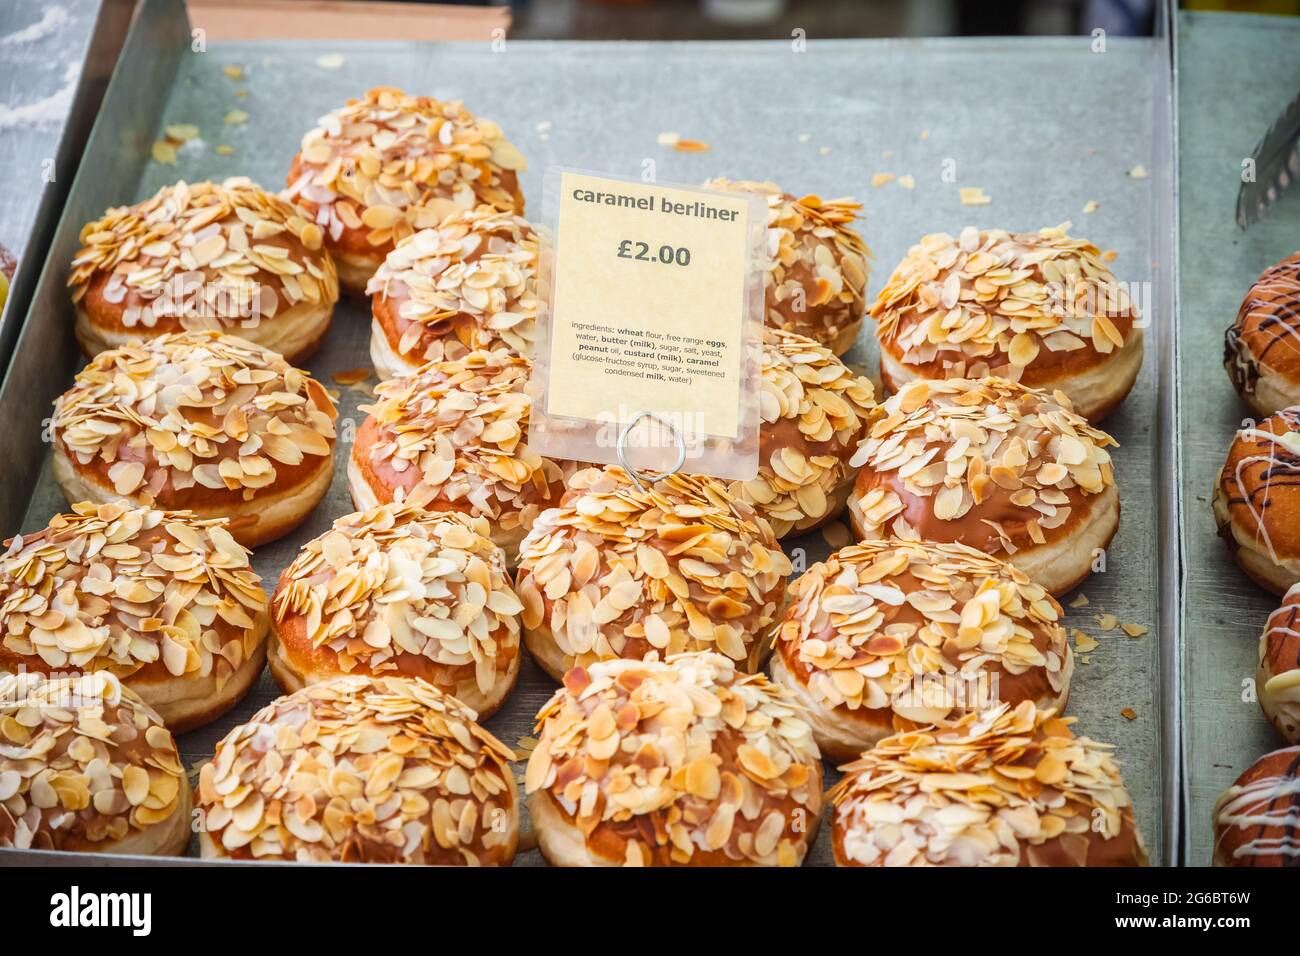 Caramel berliners, beignets allemands, exposés au marché de Broadway, un marché de rue à Hackney, dans l'est de Londres Banque D'Images